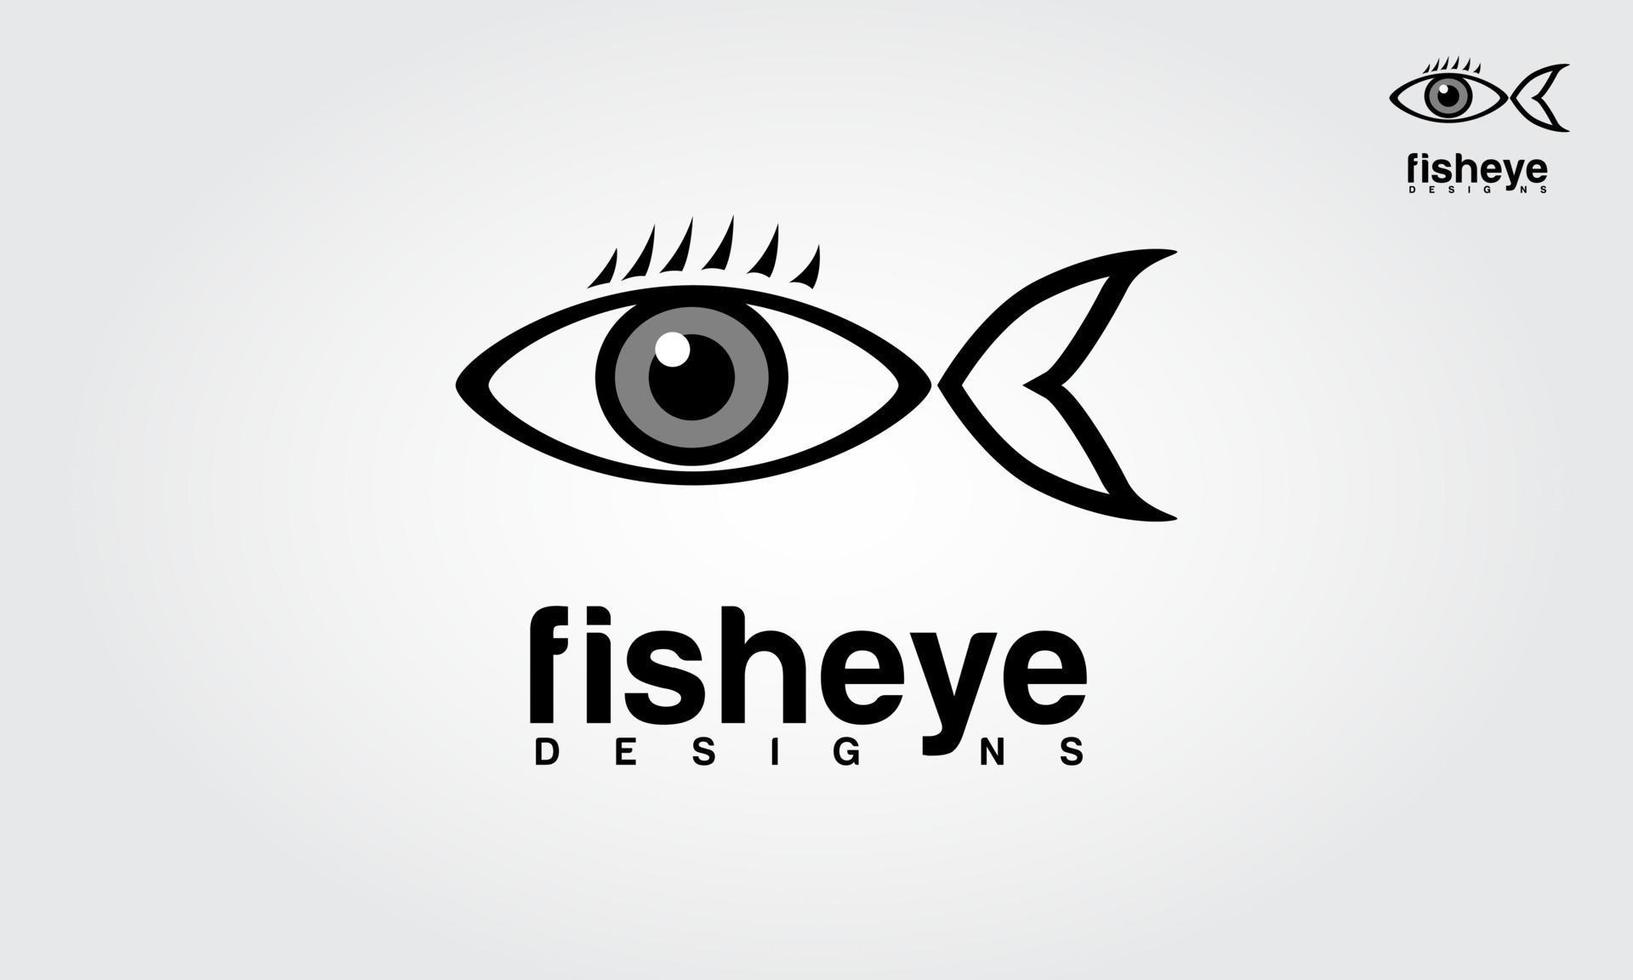 fish eye design vektor logotyp mall. denna smarta logotyp kan användas för reklam, tv-kanaler, artister, sociala medier etc. fish eye högkvalitativ logotypdesign, enkel och modern.